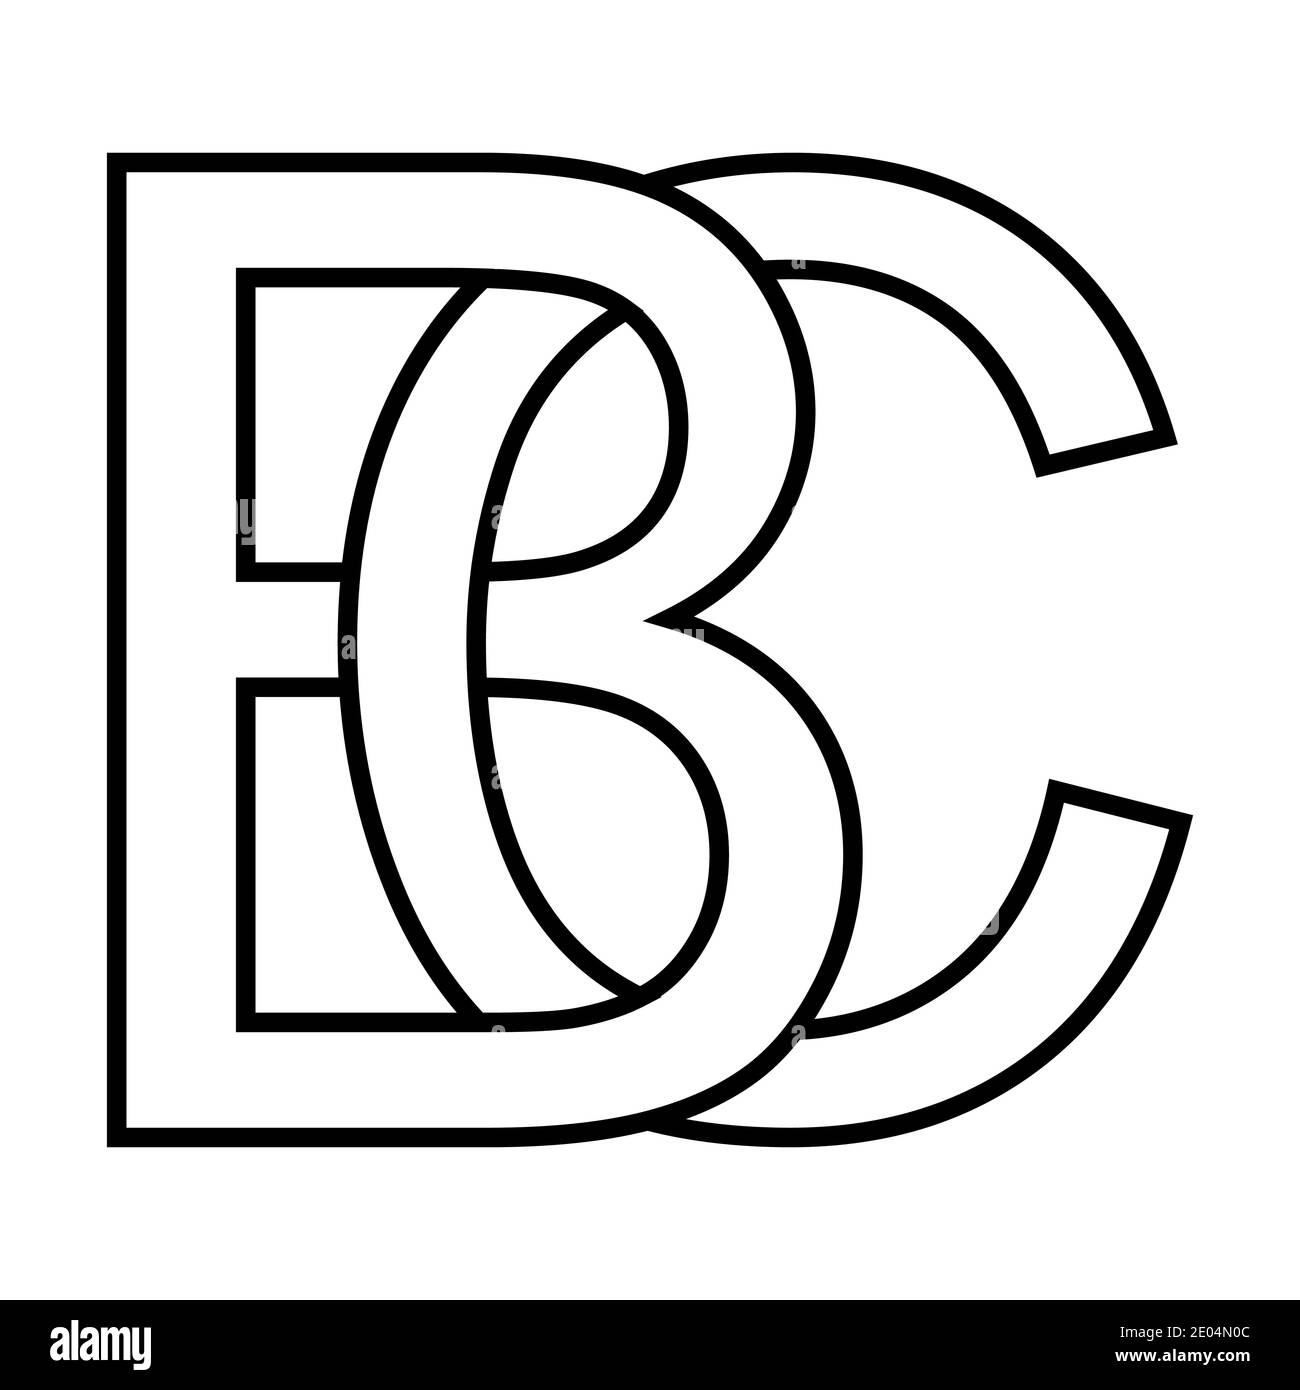 Logo Zeichen bc, cb Symbol Zeichen zwei Zeilensprungbuchstaben B und C Vektor-Logo bc, cb erste Großbuchstaben Muster Alphabet b, c Stock Vektor